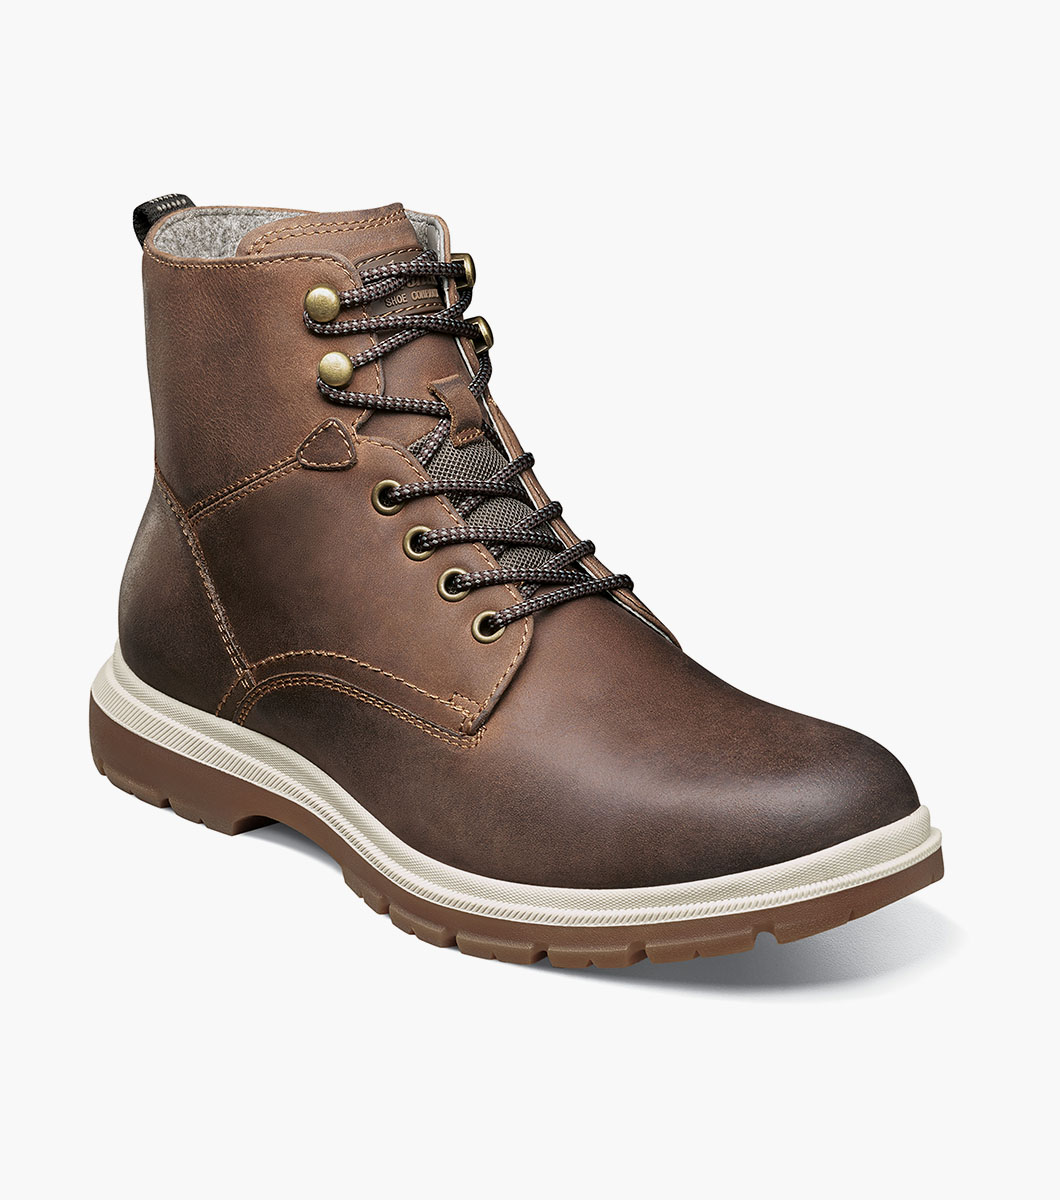 Lookout Plain Toe Lace Up Boot Men’s Casual Shoes | Florsheim.com